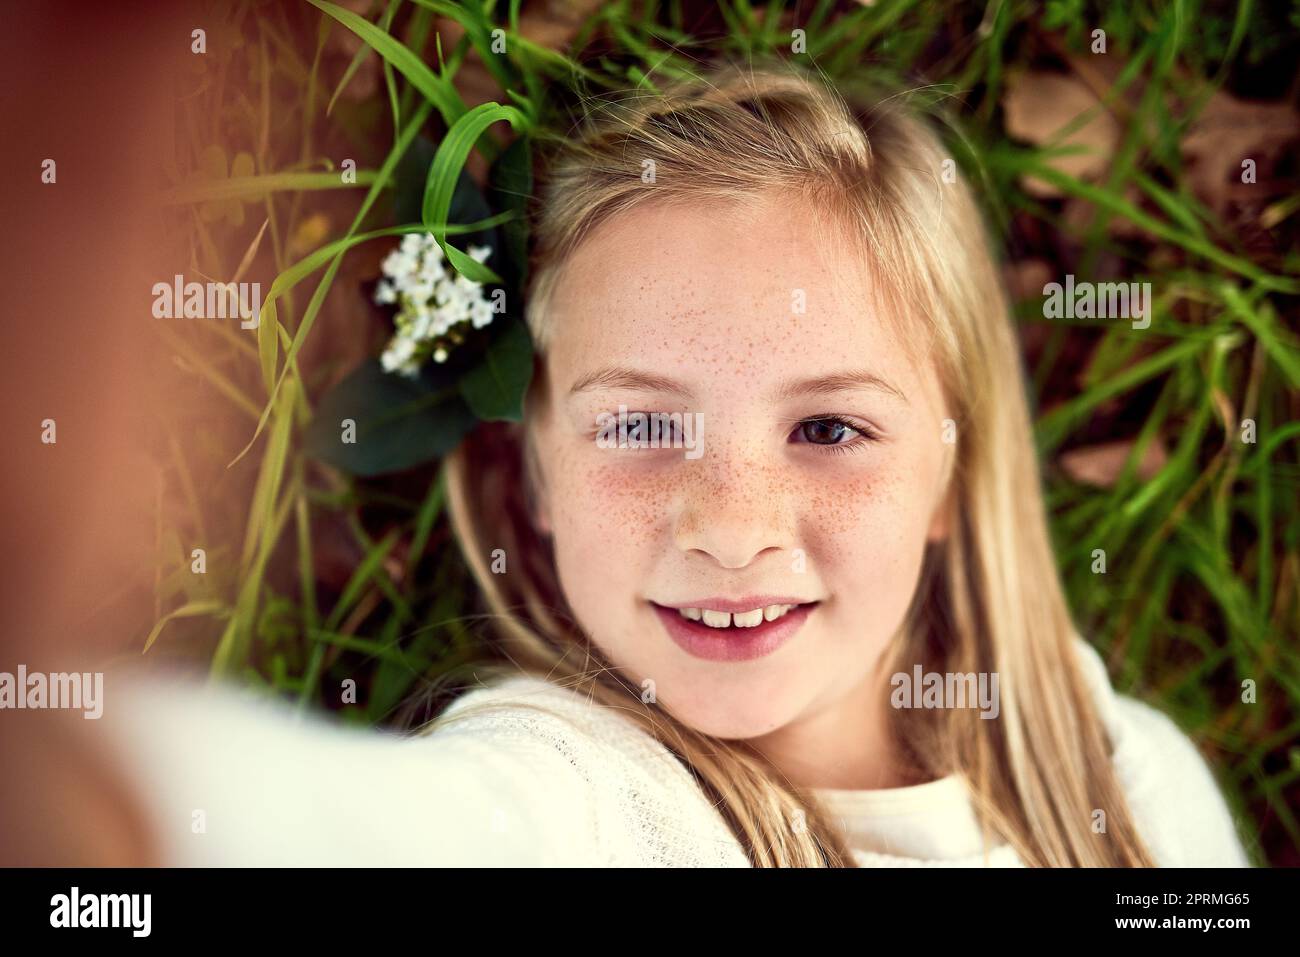 Glückseligkeit in der Kindheit. Porträt eines jungen Mädchens, das ein Selfie gemacht hat, während es draußen auf dem Gras liegt. Stockfoto